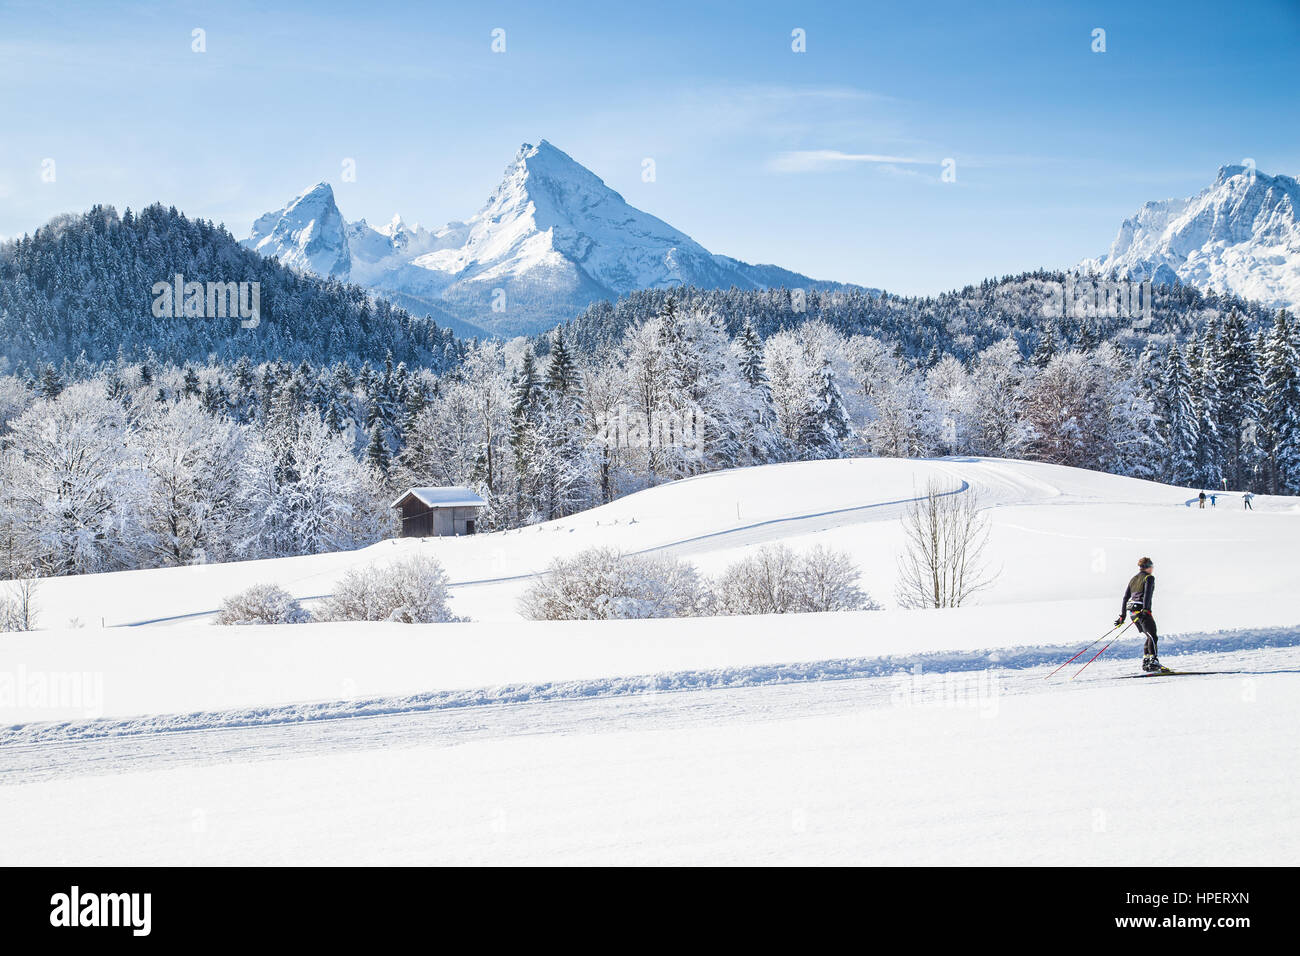 Scenic winter wonderland paesaggi con lo sci di fondo la via e il famoso monte Watzmann vertice in background su un bel freddo giorno di sole Foto Stock